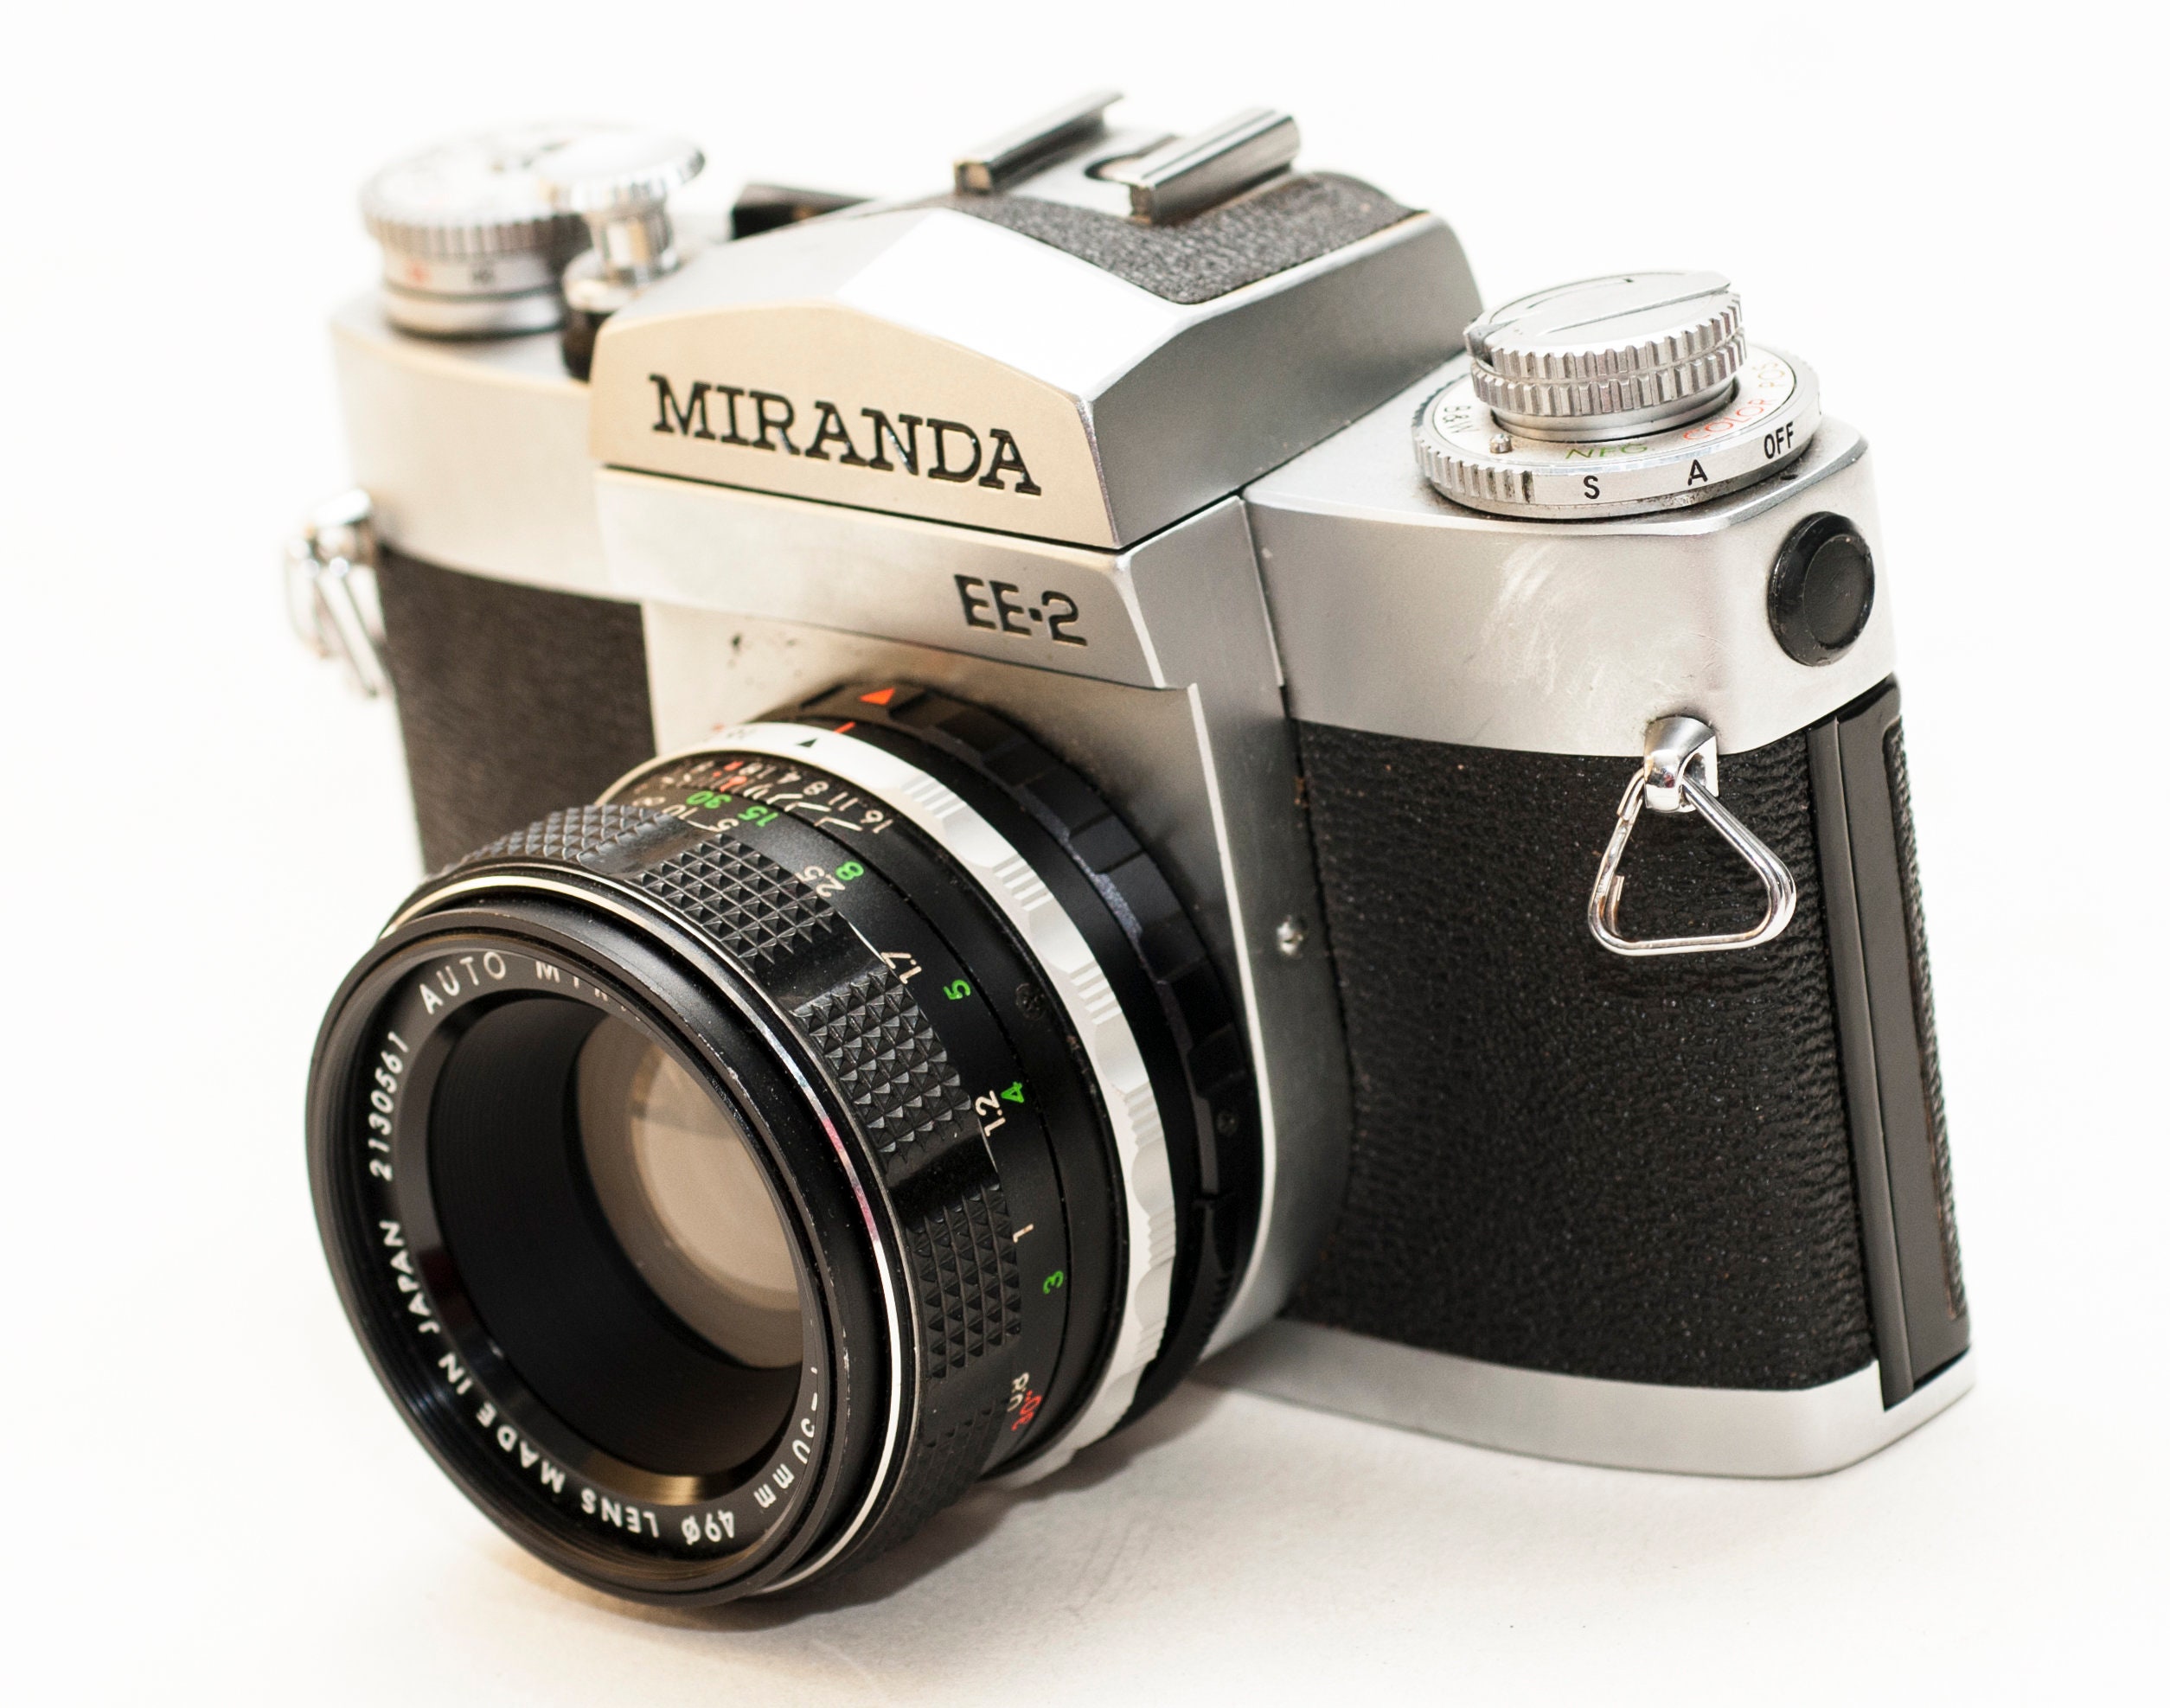 35 Mm Film Camera MIRANDA EE2 With 50 Mm F1.8 Lens. - Etsy Sweden